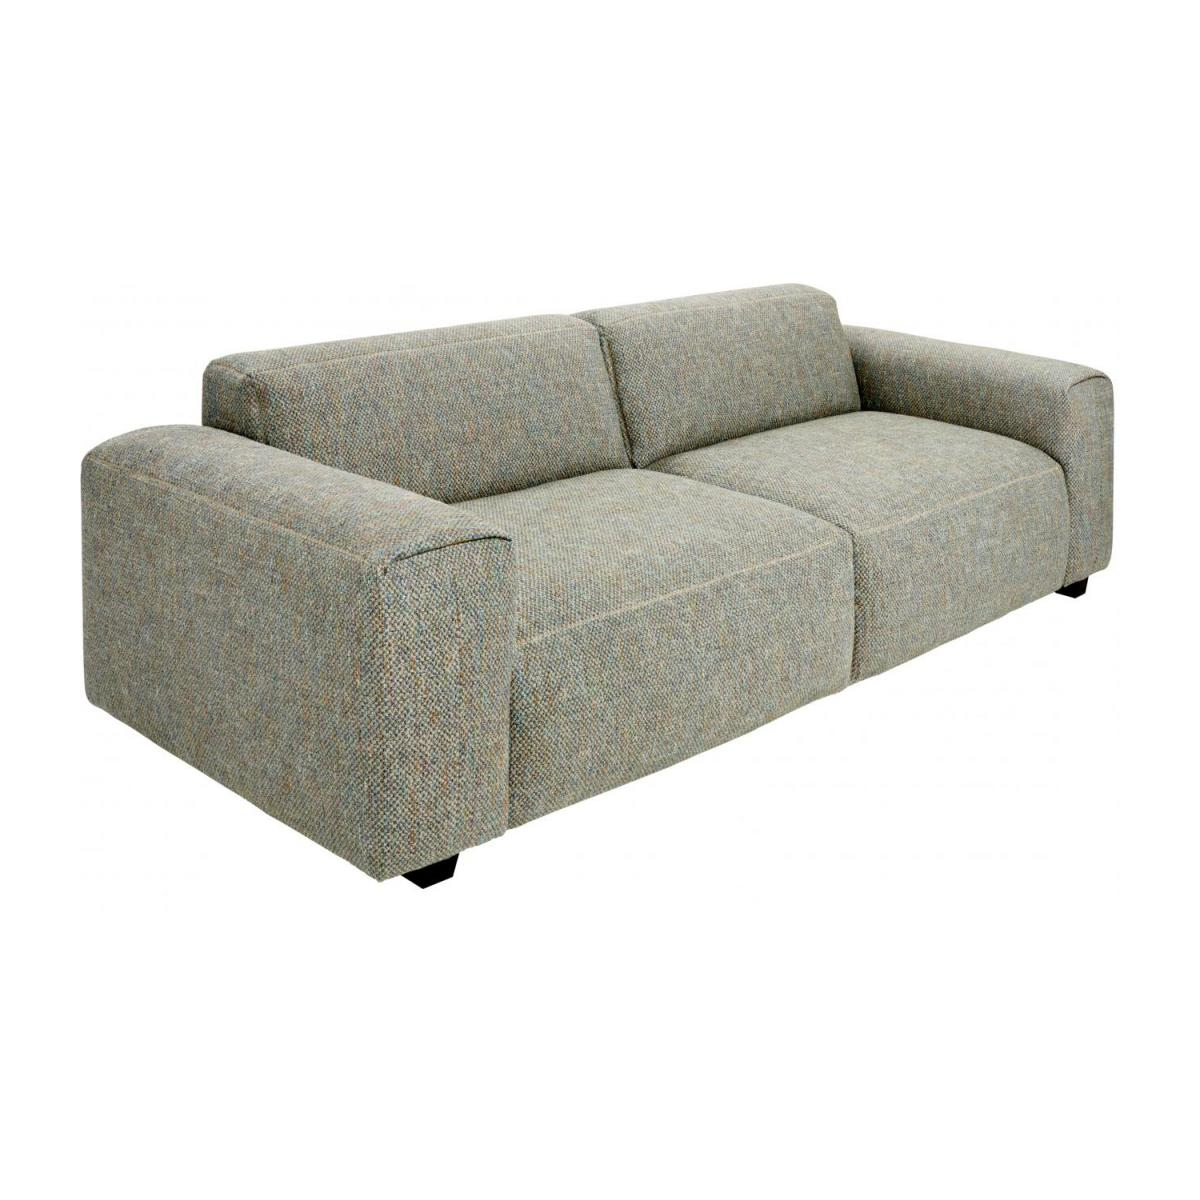 3-Sitzer Sofa Aus Stoff Bellagio Organic Green encequiconcerne Sofa 3 Places